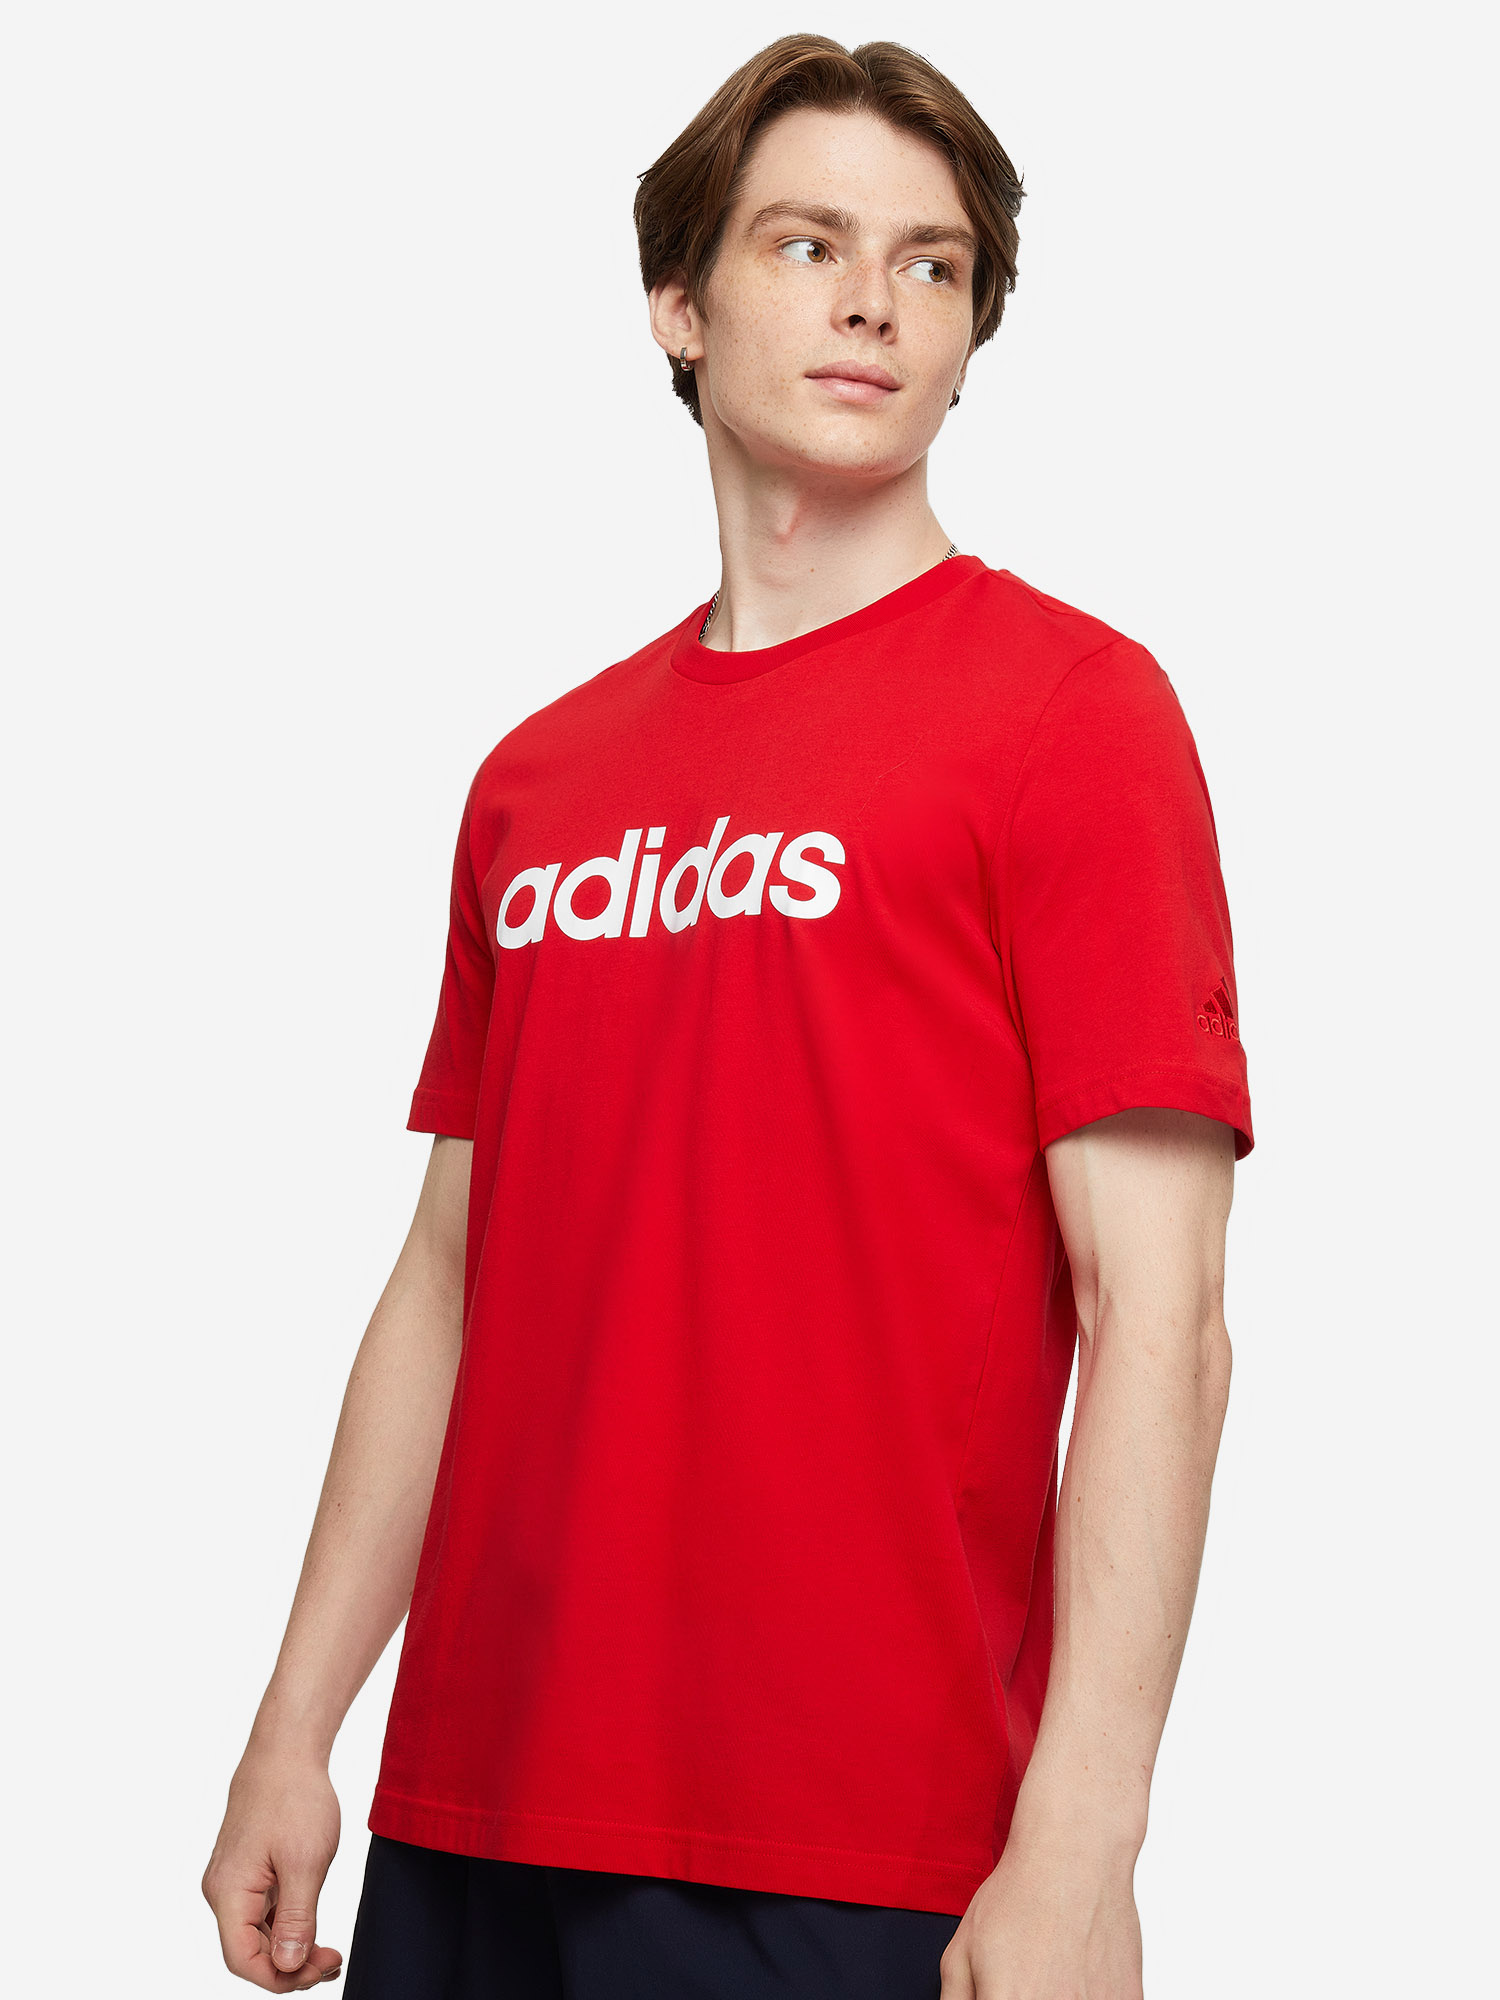 Футболка мужская adidas, Красный футболка мужская adidas красный